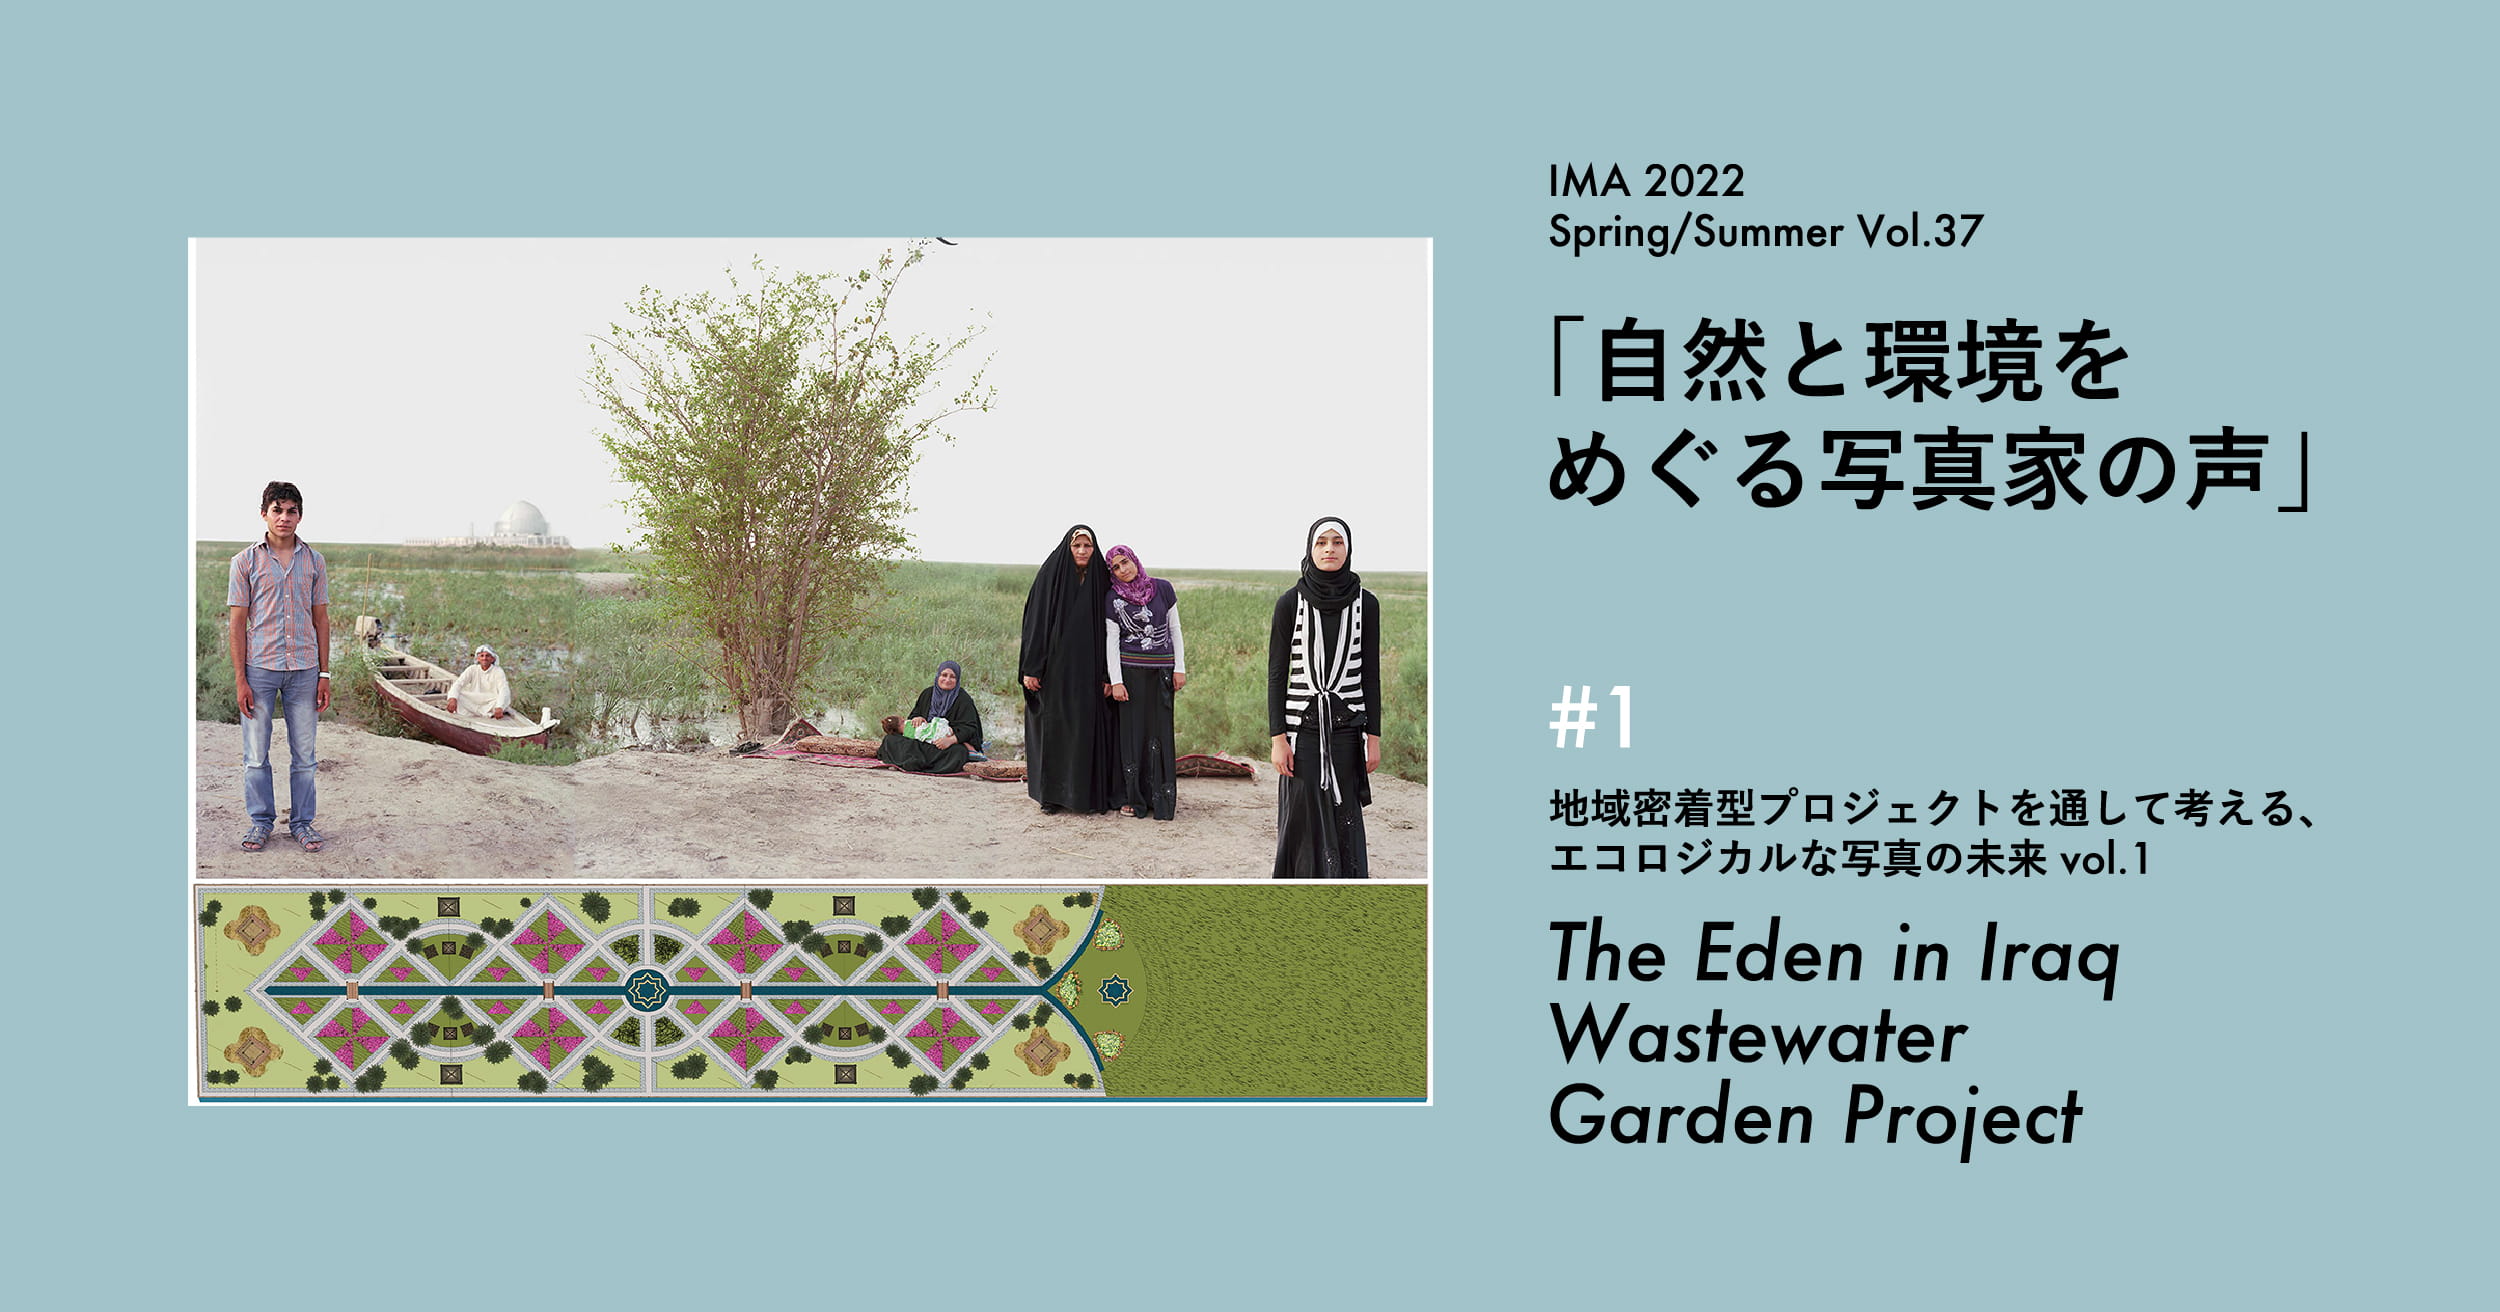 地域密着型プロジェクトを通して考える、エコロジカルな写真の未来 Vol.1 メリデル・ルベンスタイン【IMA Vol.37特集】 | 地域密着型プロジェクトを通して考える、エコロジカルな写真の未来 メリデル・ルベンスタイン「The Eden in Iraq Wastewater Garden Project」【IMA Vol.37特集】